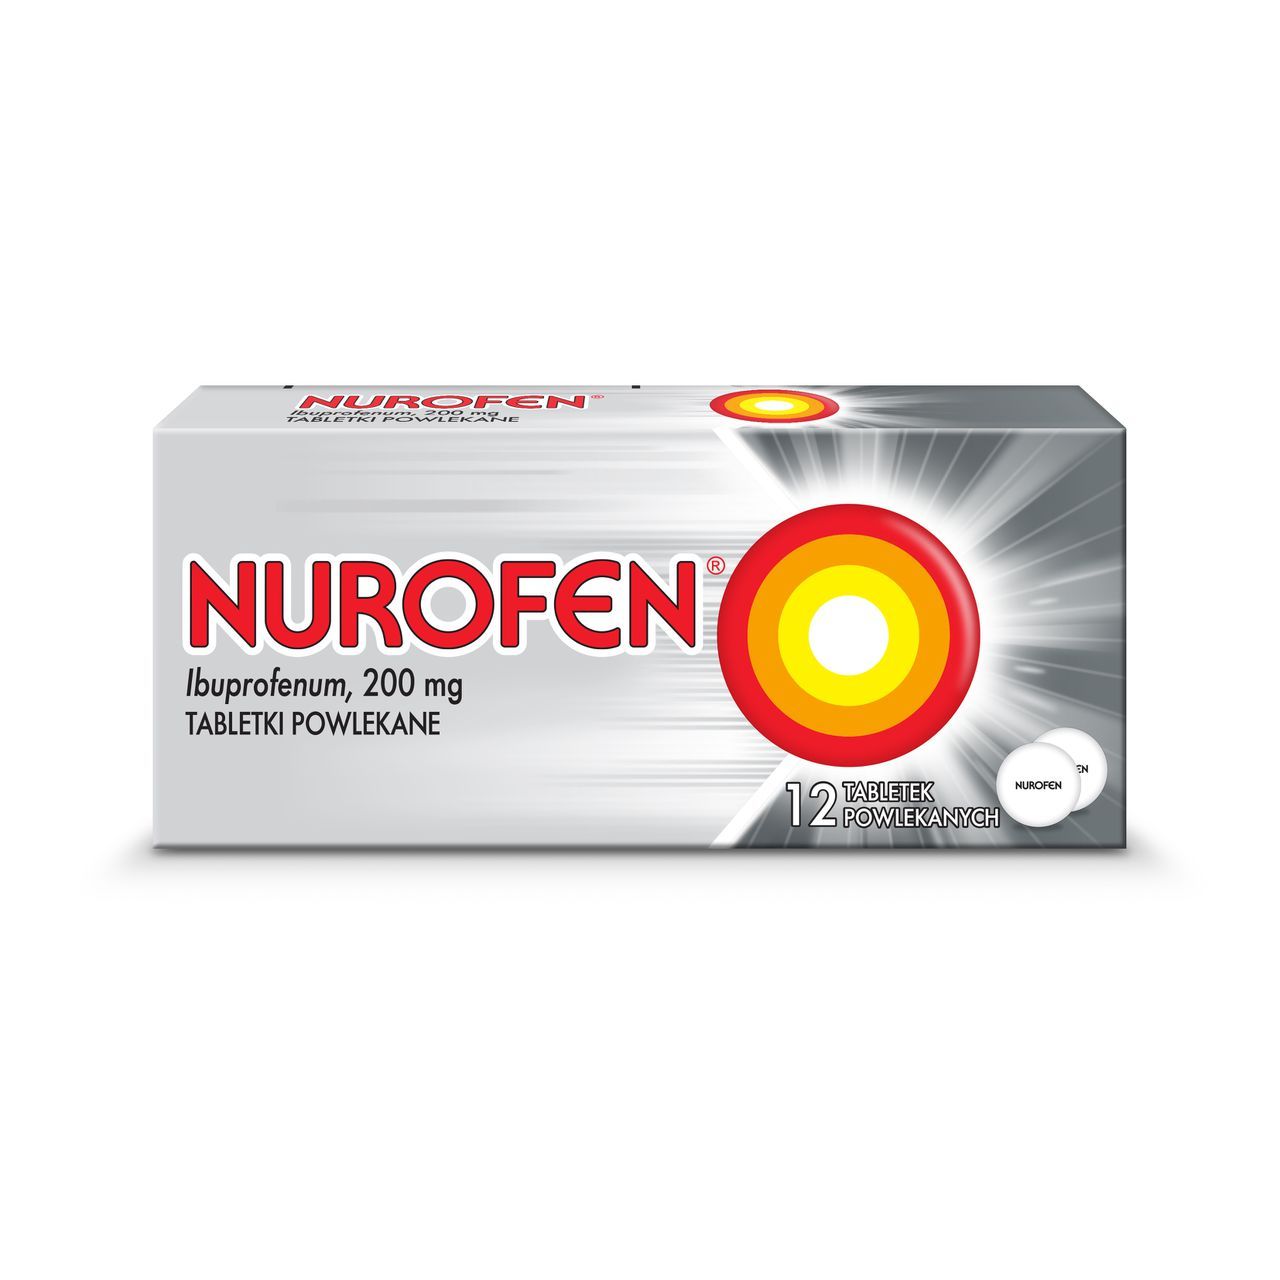 Как часто можно принимать нурофен